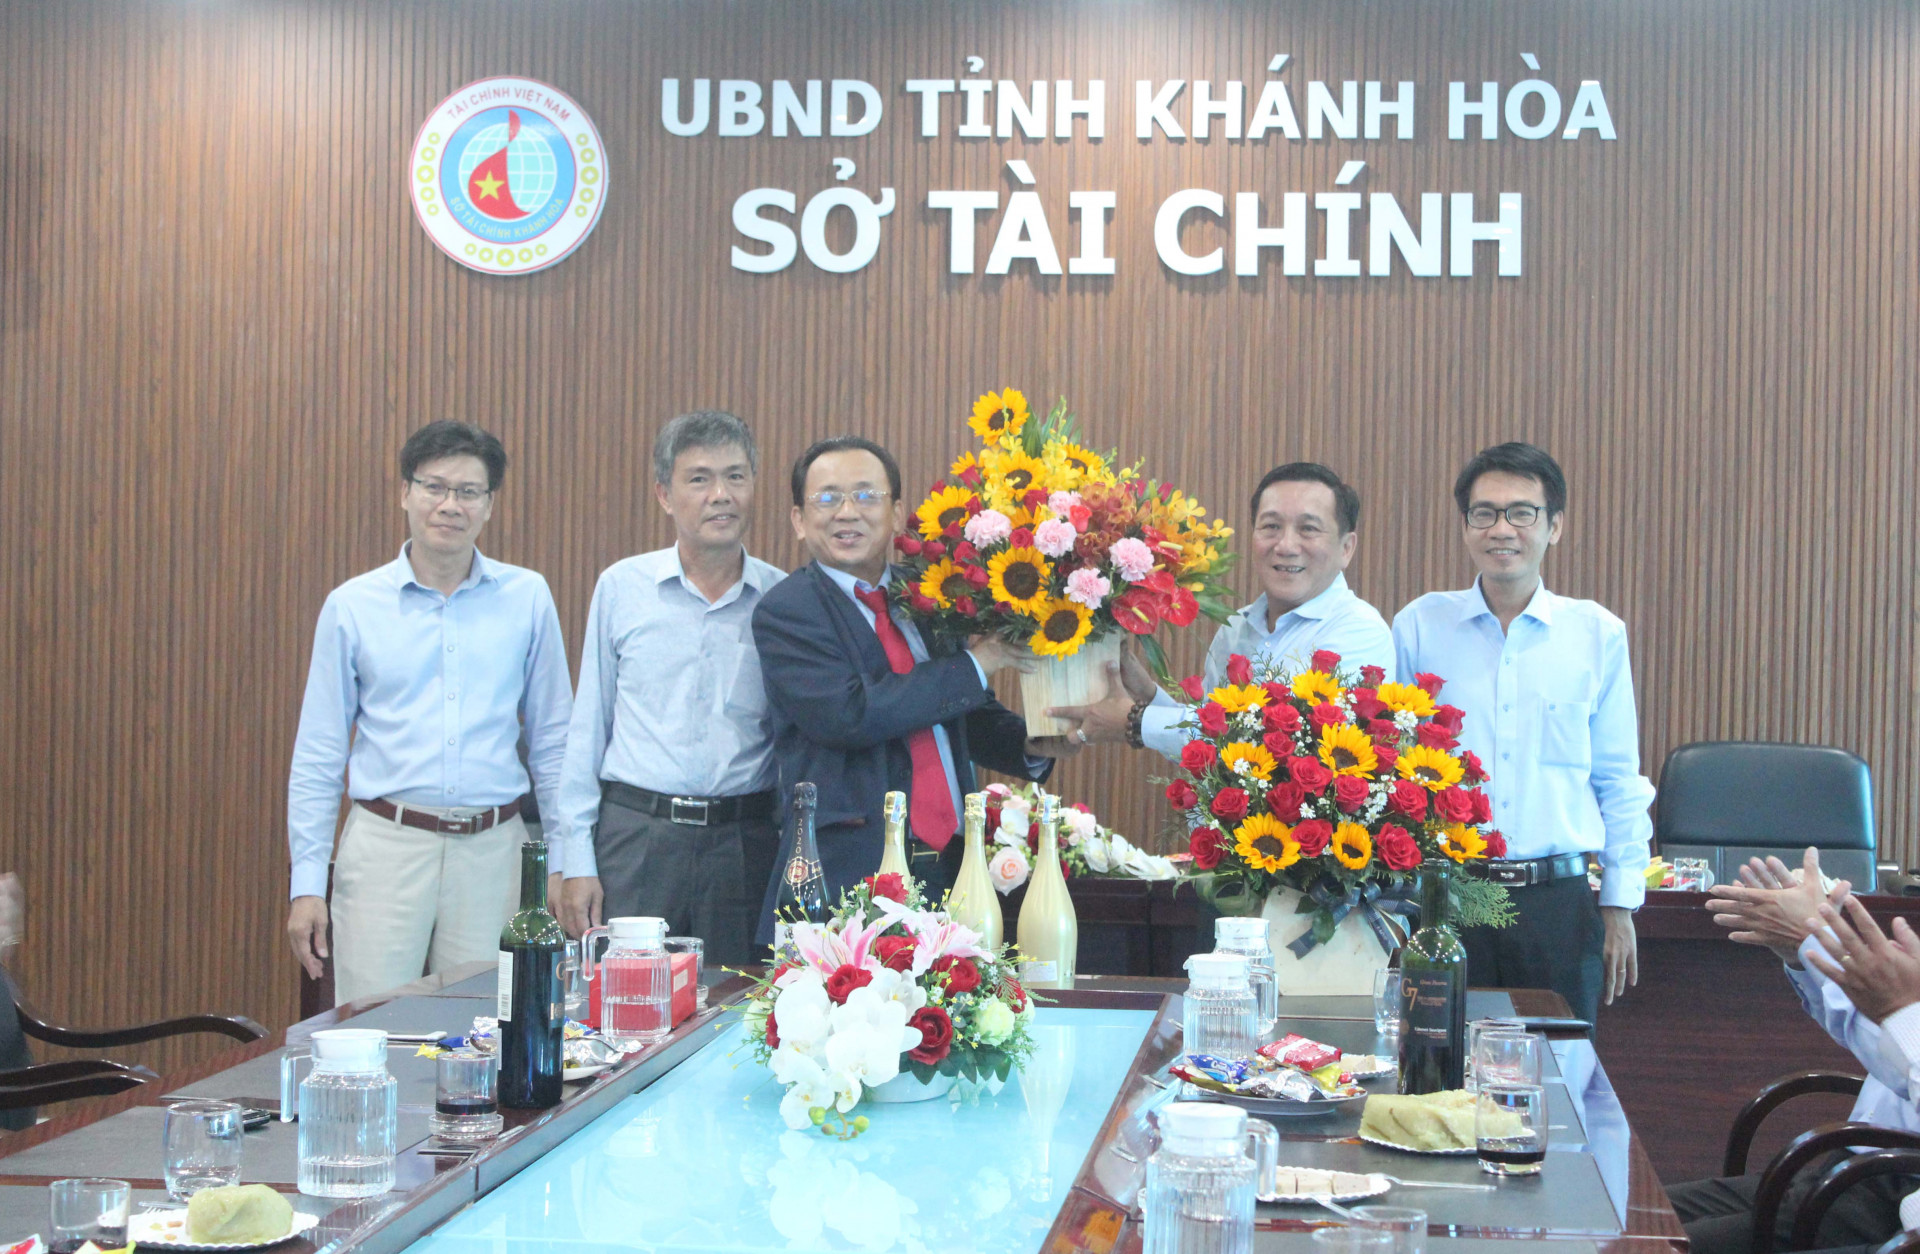 Ông Lê Hữu Hoàng tặng hoa cho lãnh đạo Sở Tài chính.